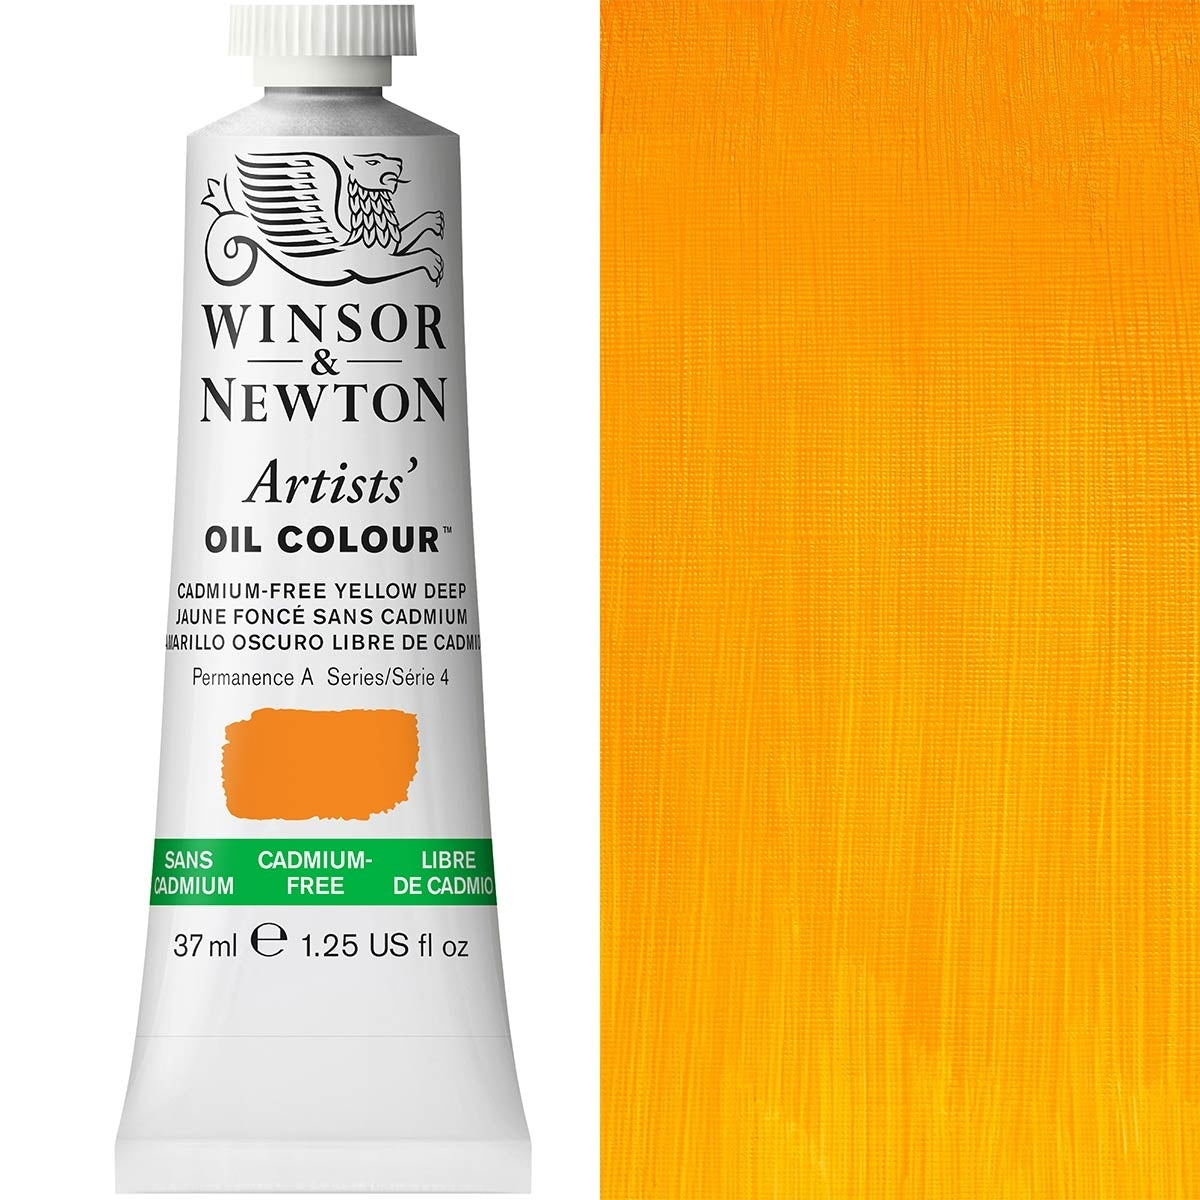 Winsor e Newton-Colore dell'olio degli artisti-37ml - Cad Free Yellow Deep